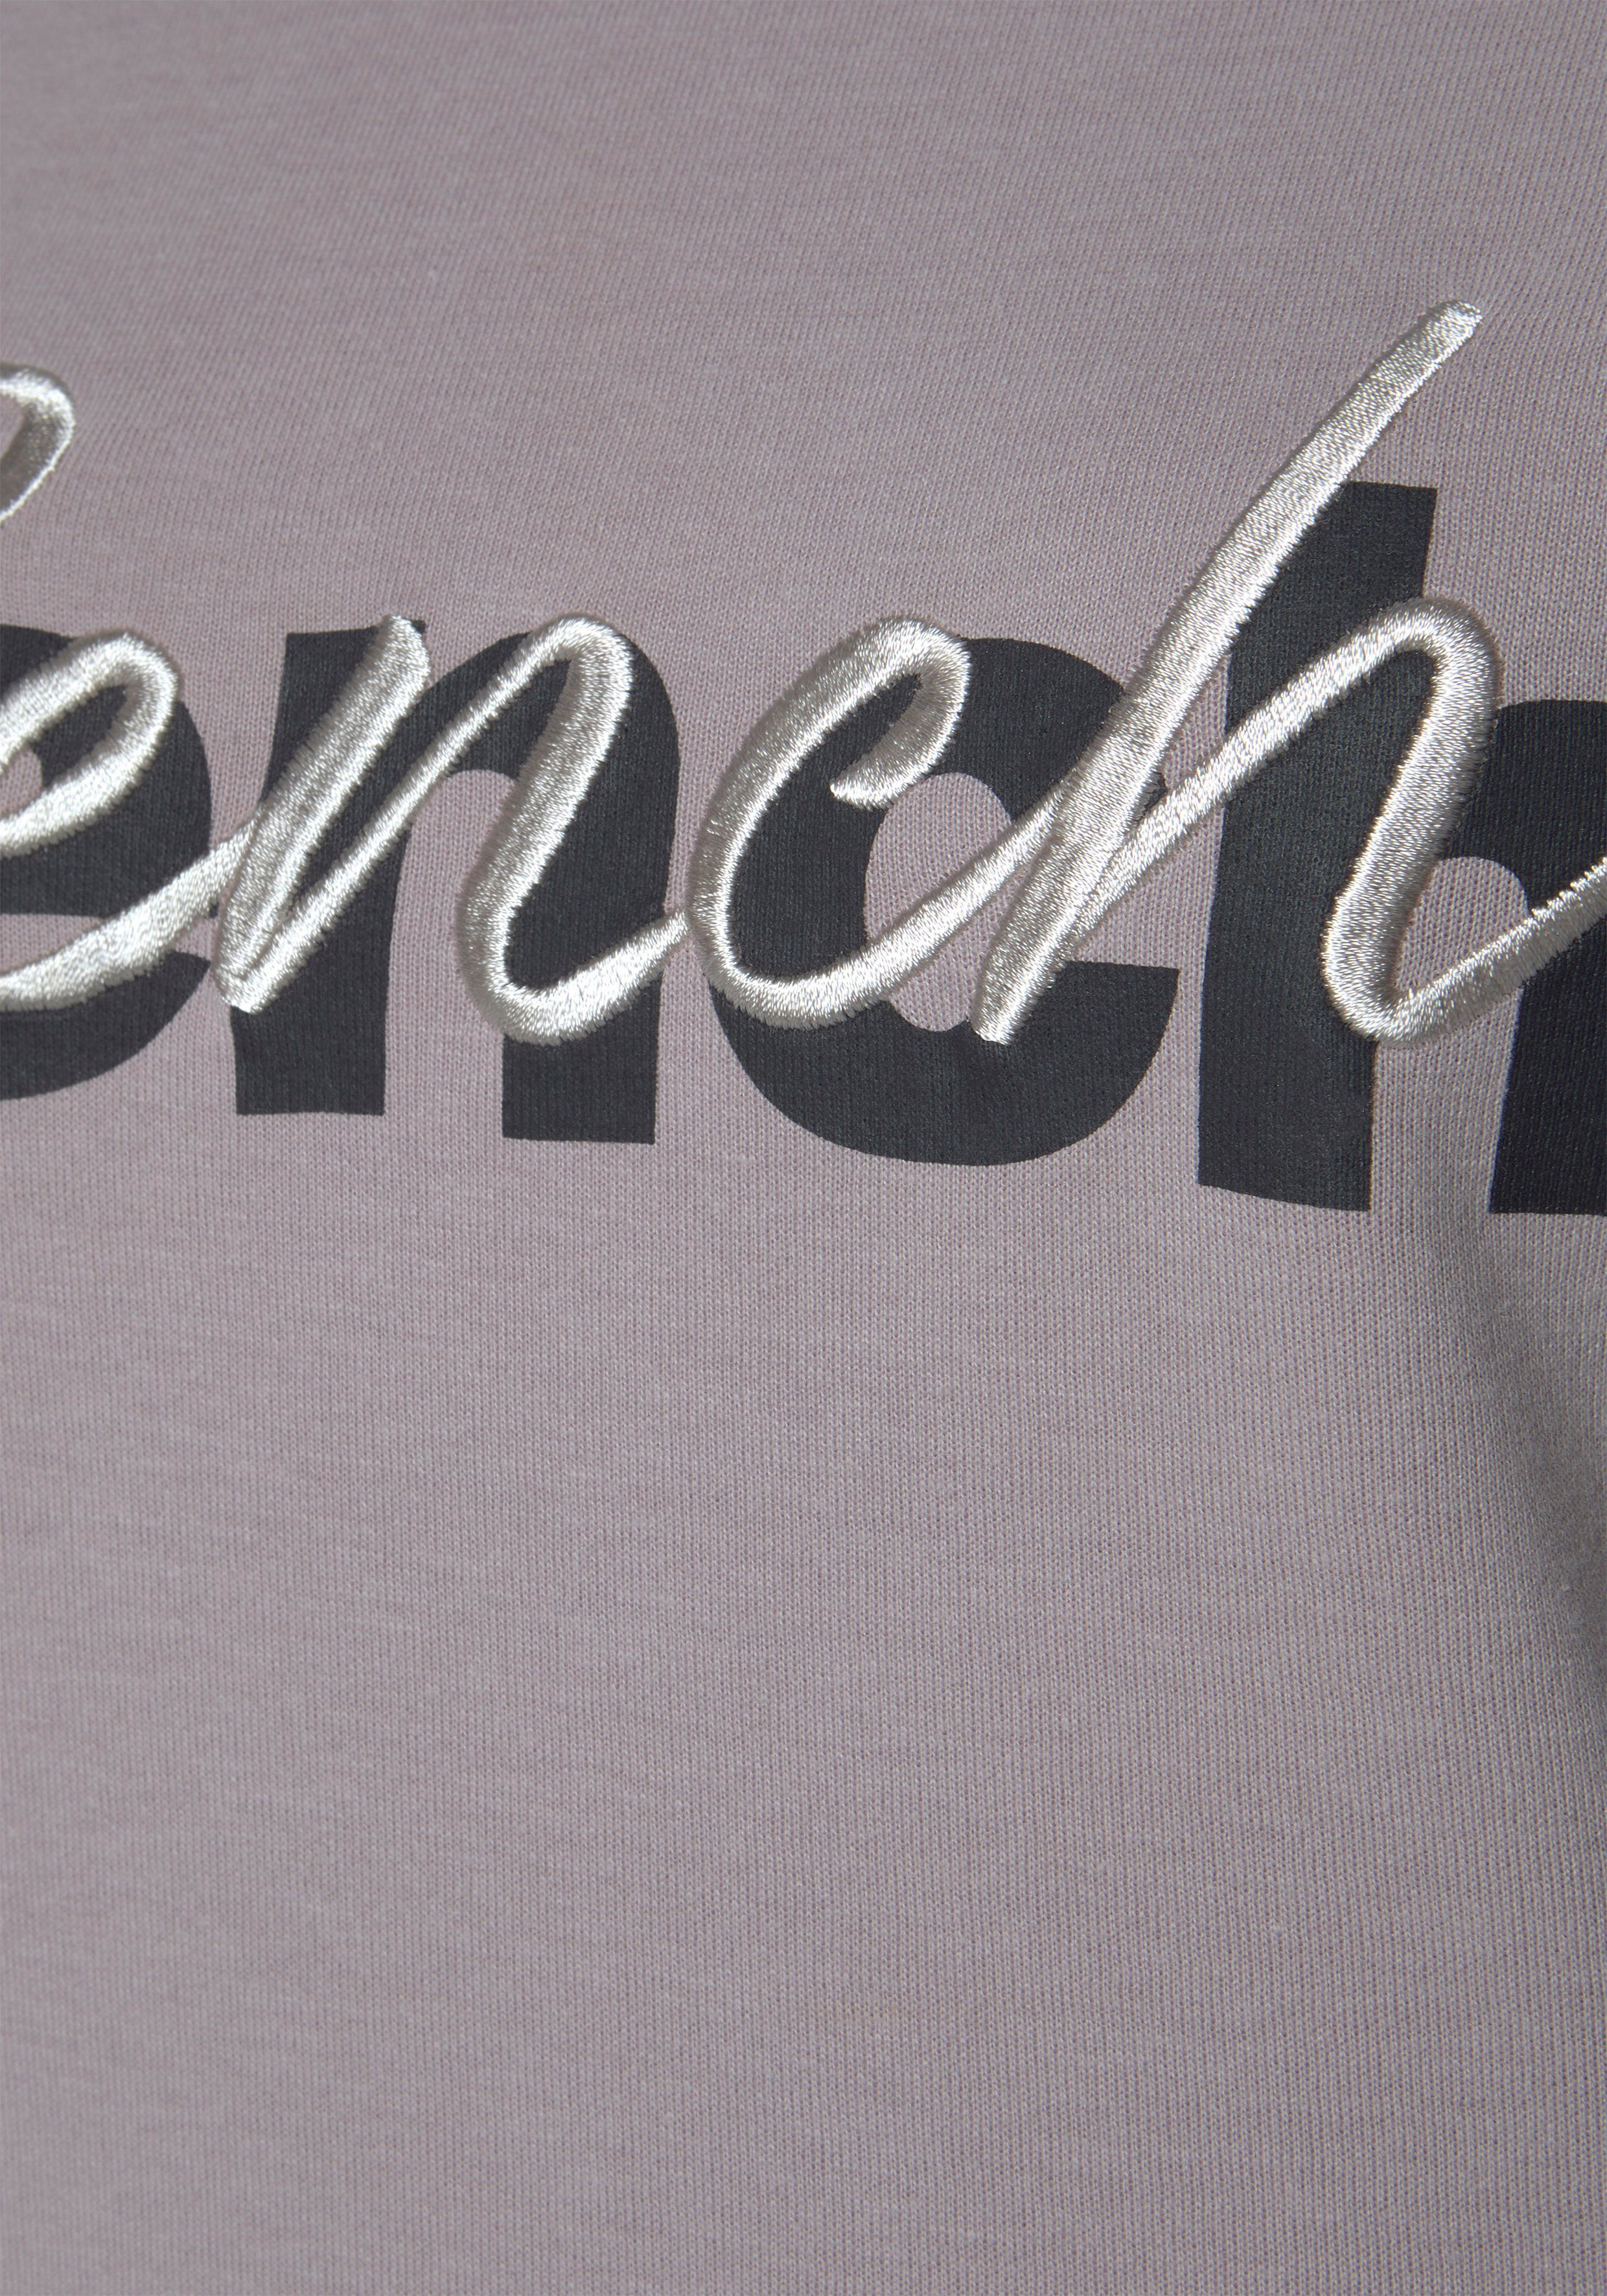 Loungeanzug und Logodruck mit rauchrosa Sweatshirt Loungewear Stickerei, Bench.